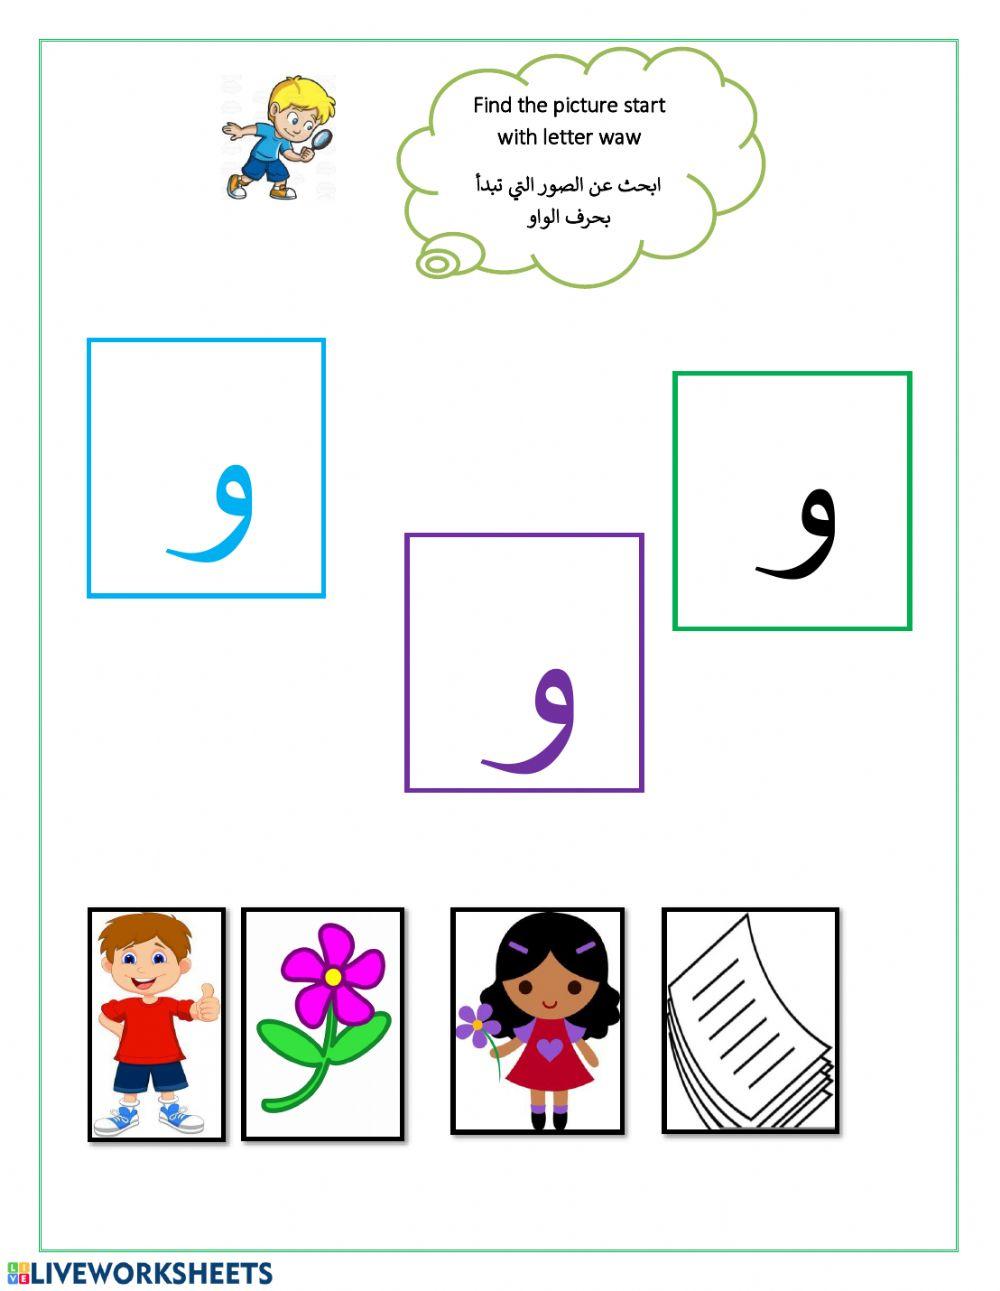 ورقة عمل للغة العربية